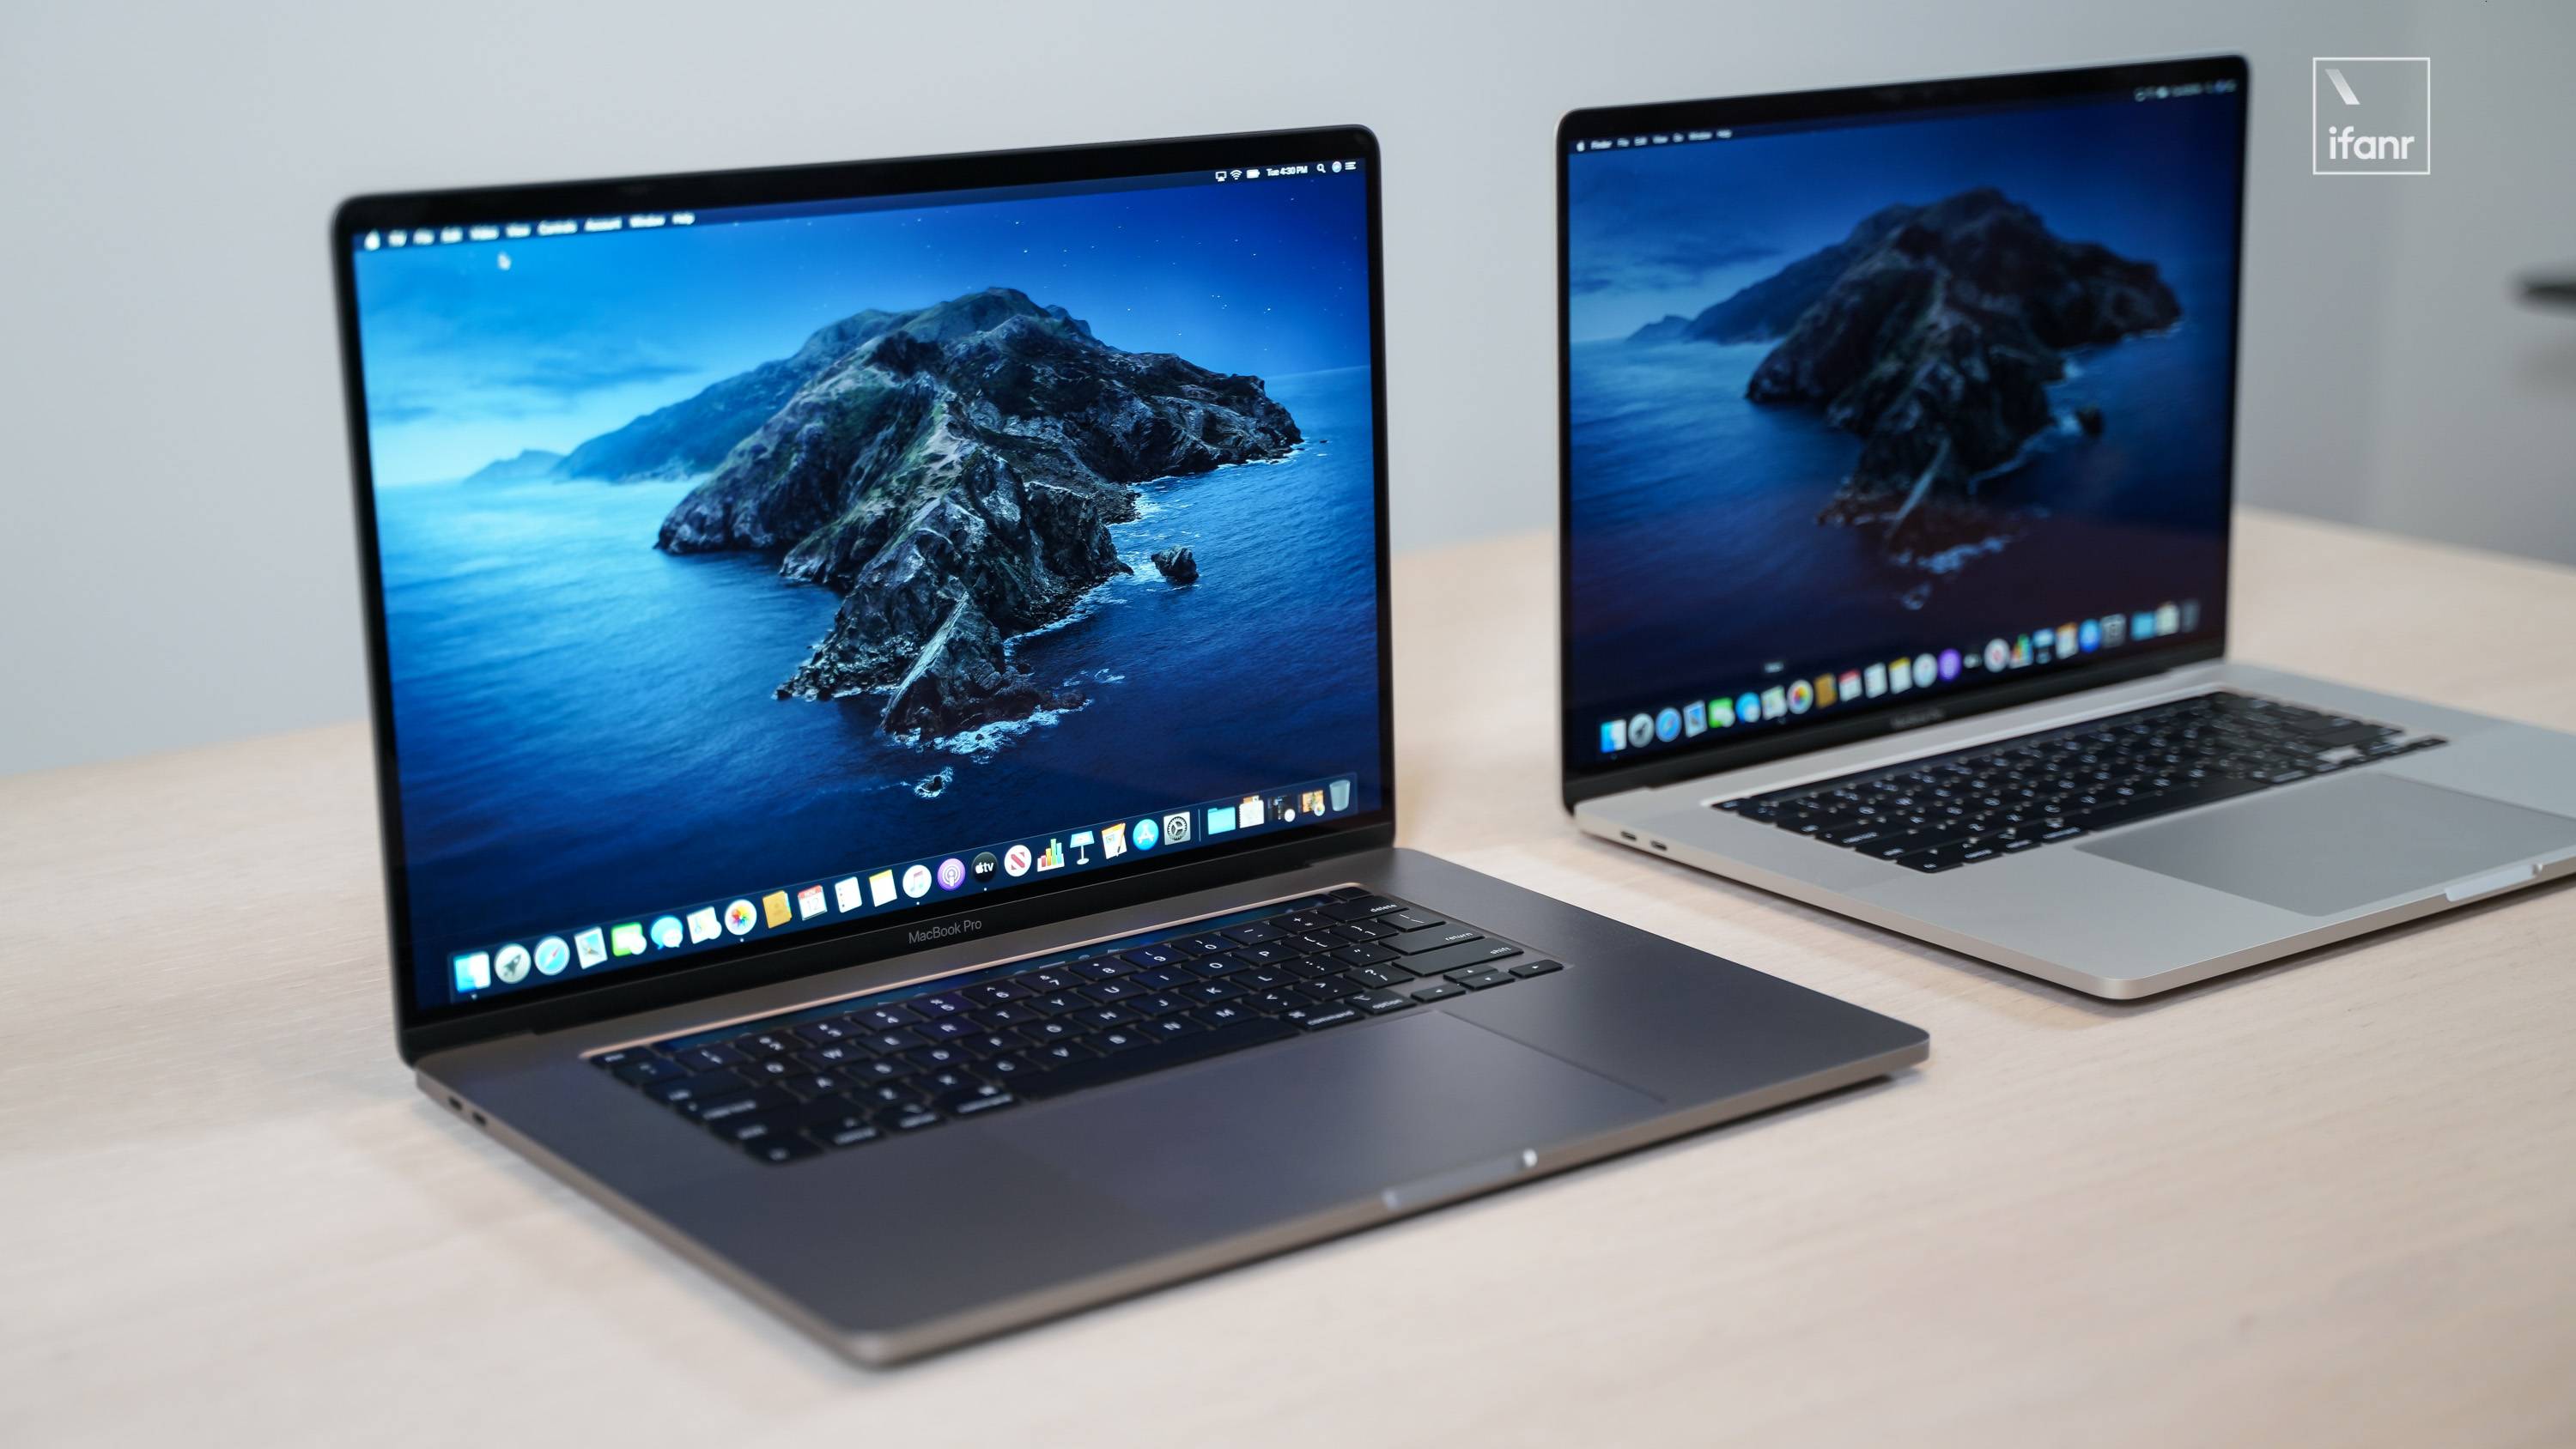 首发 16 英寸macbook Pro 上手体验 苹果史上最强笔记本电脑 爱范儿